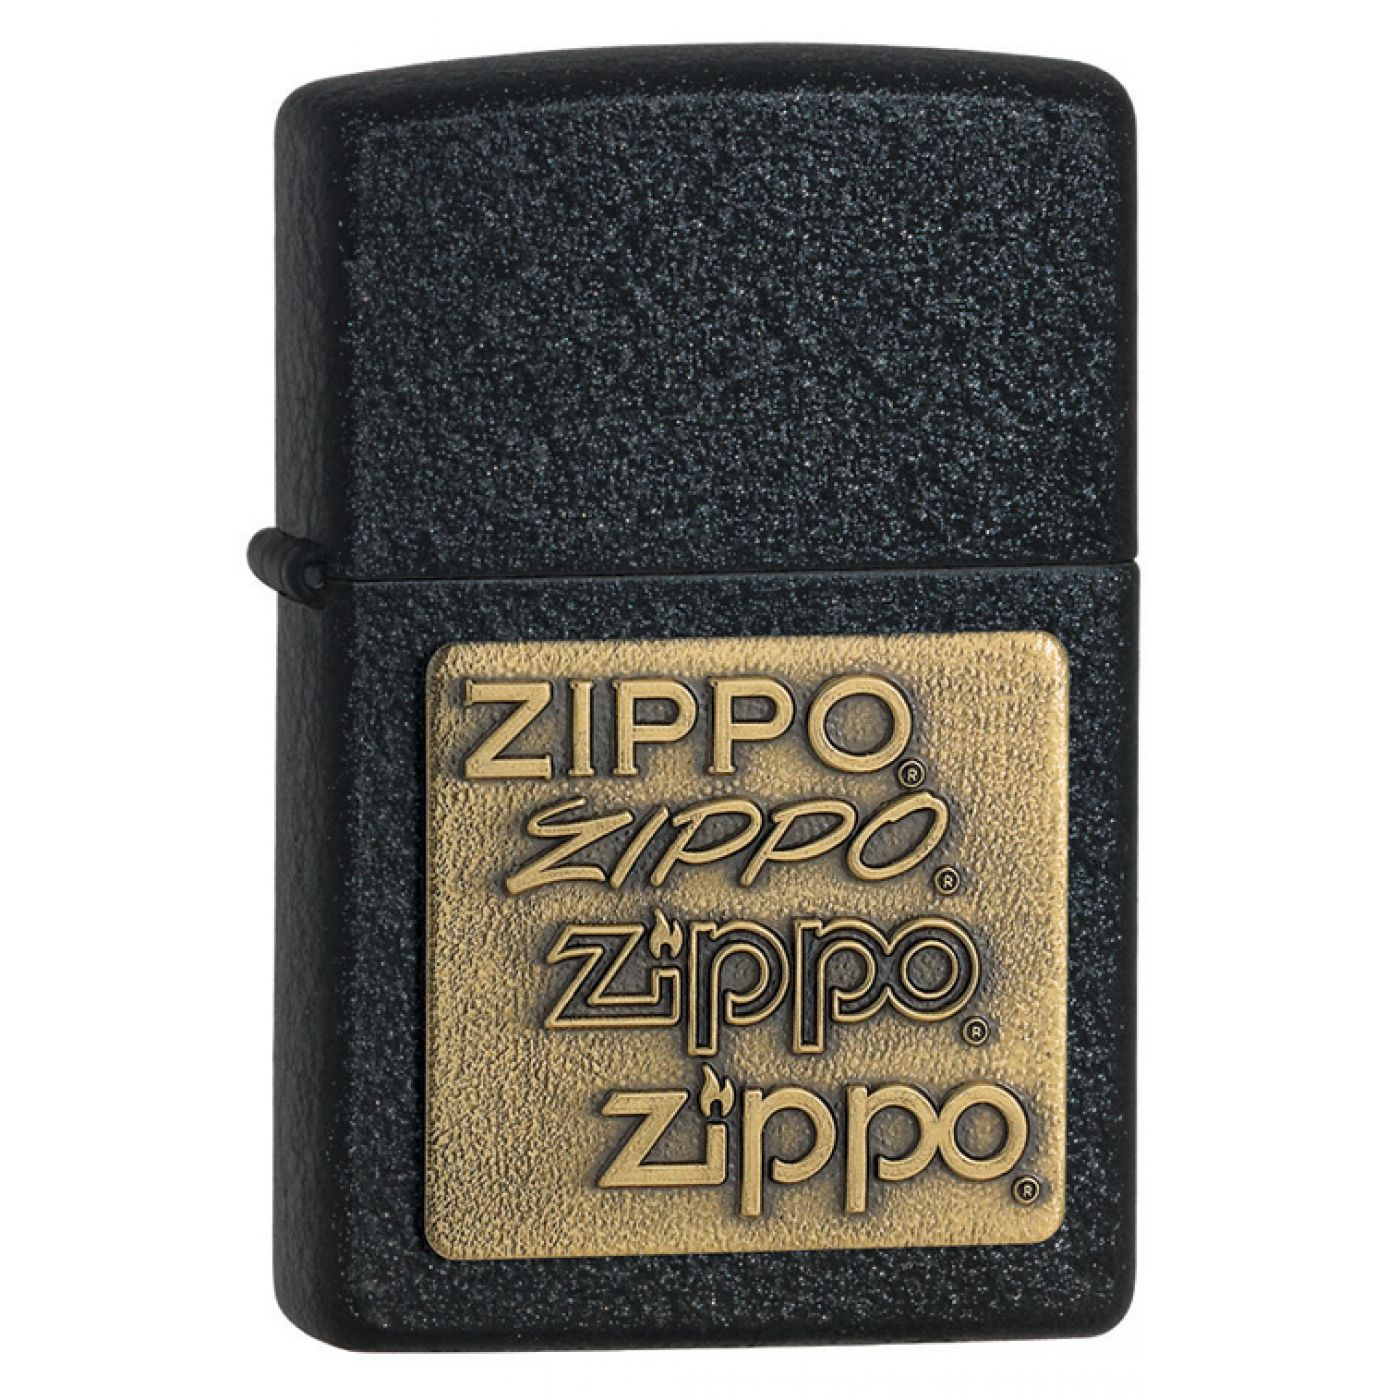 zippo-362-1400x1400h